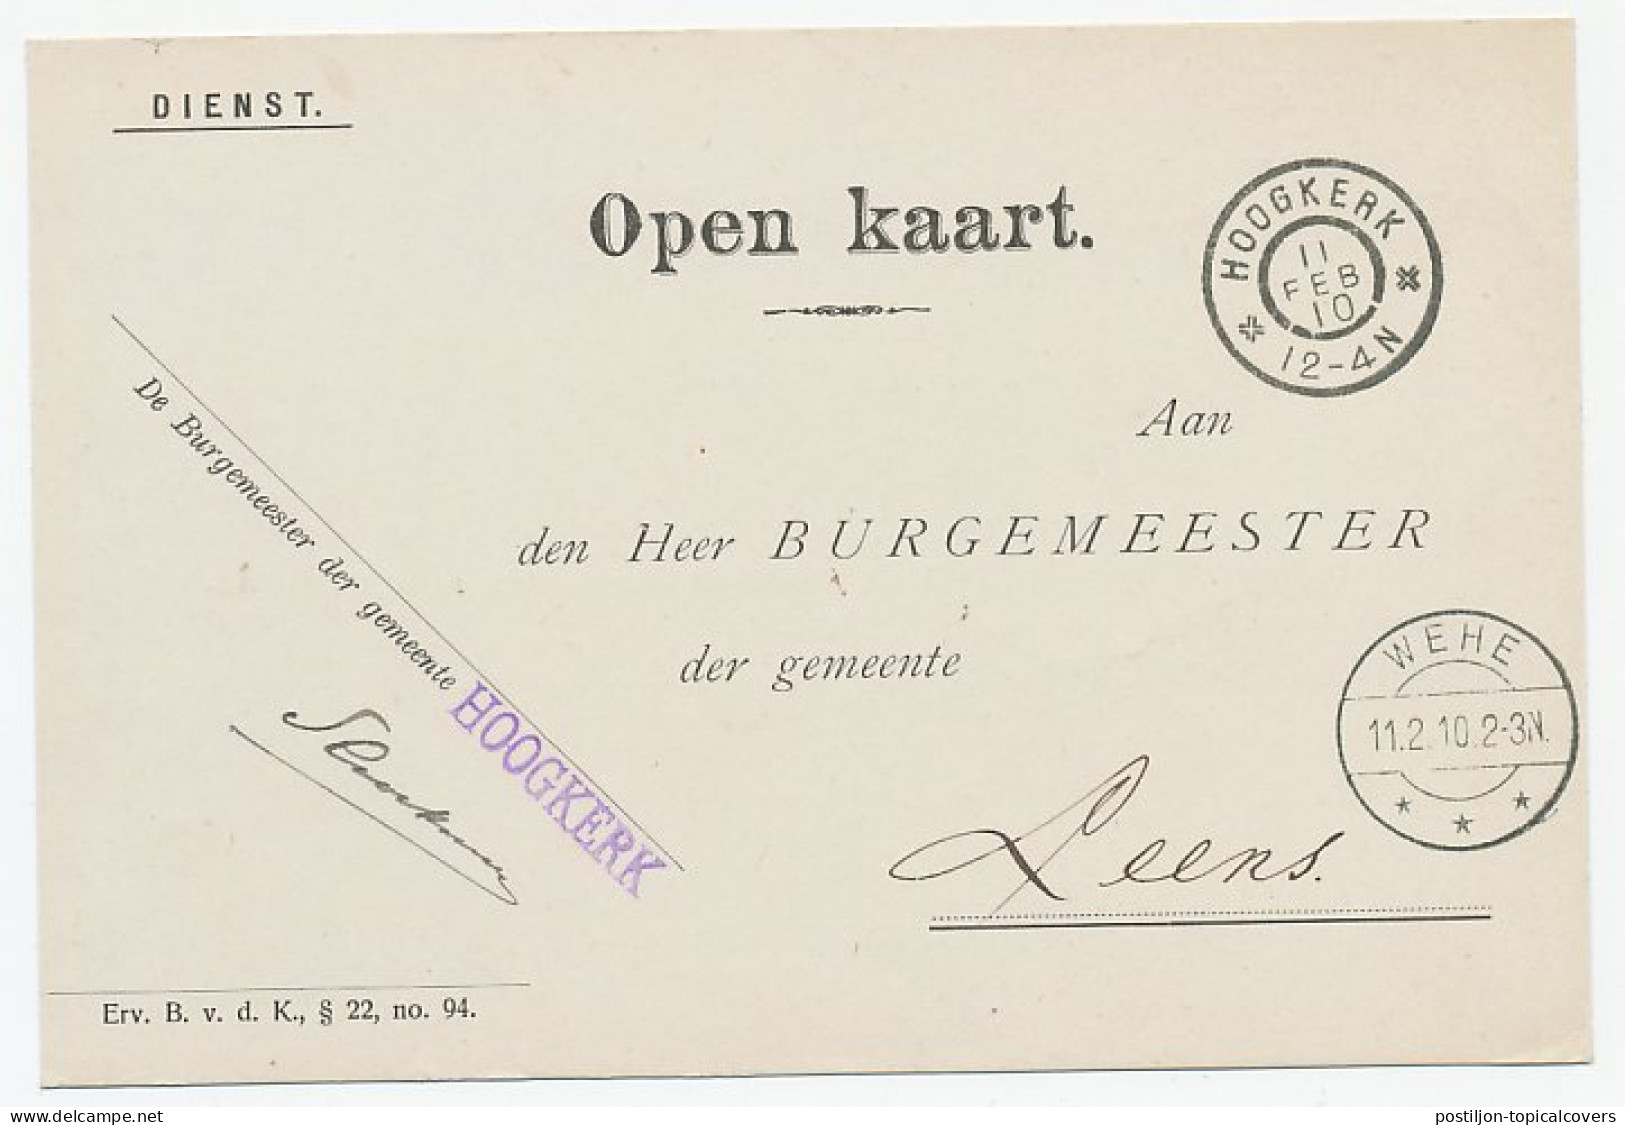 Grootrondstempel Hoogkerk 1910 - Non Classificati